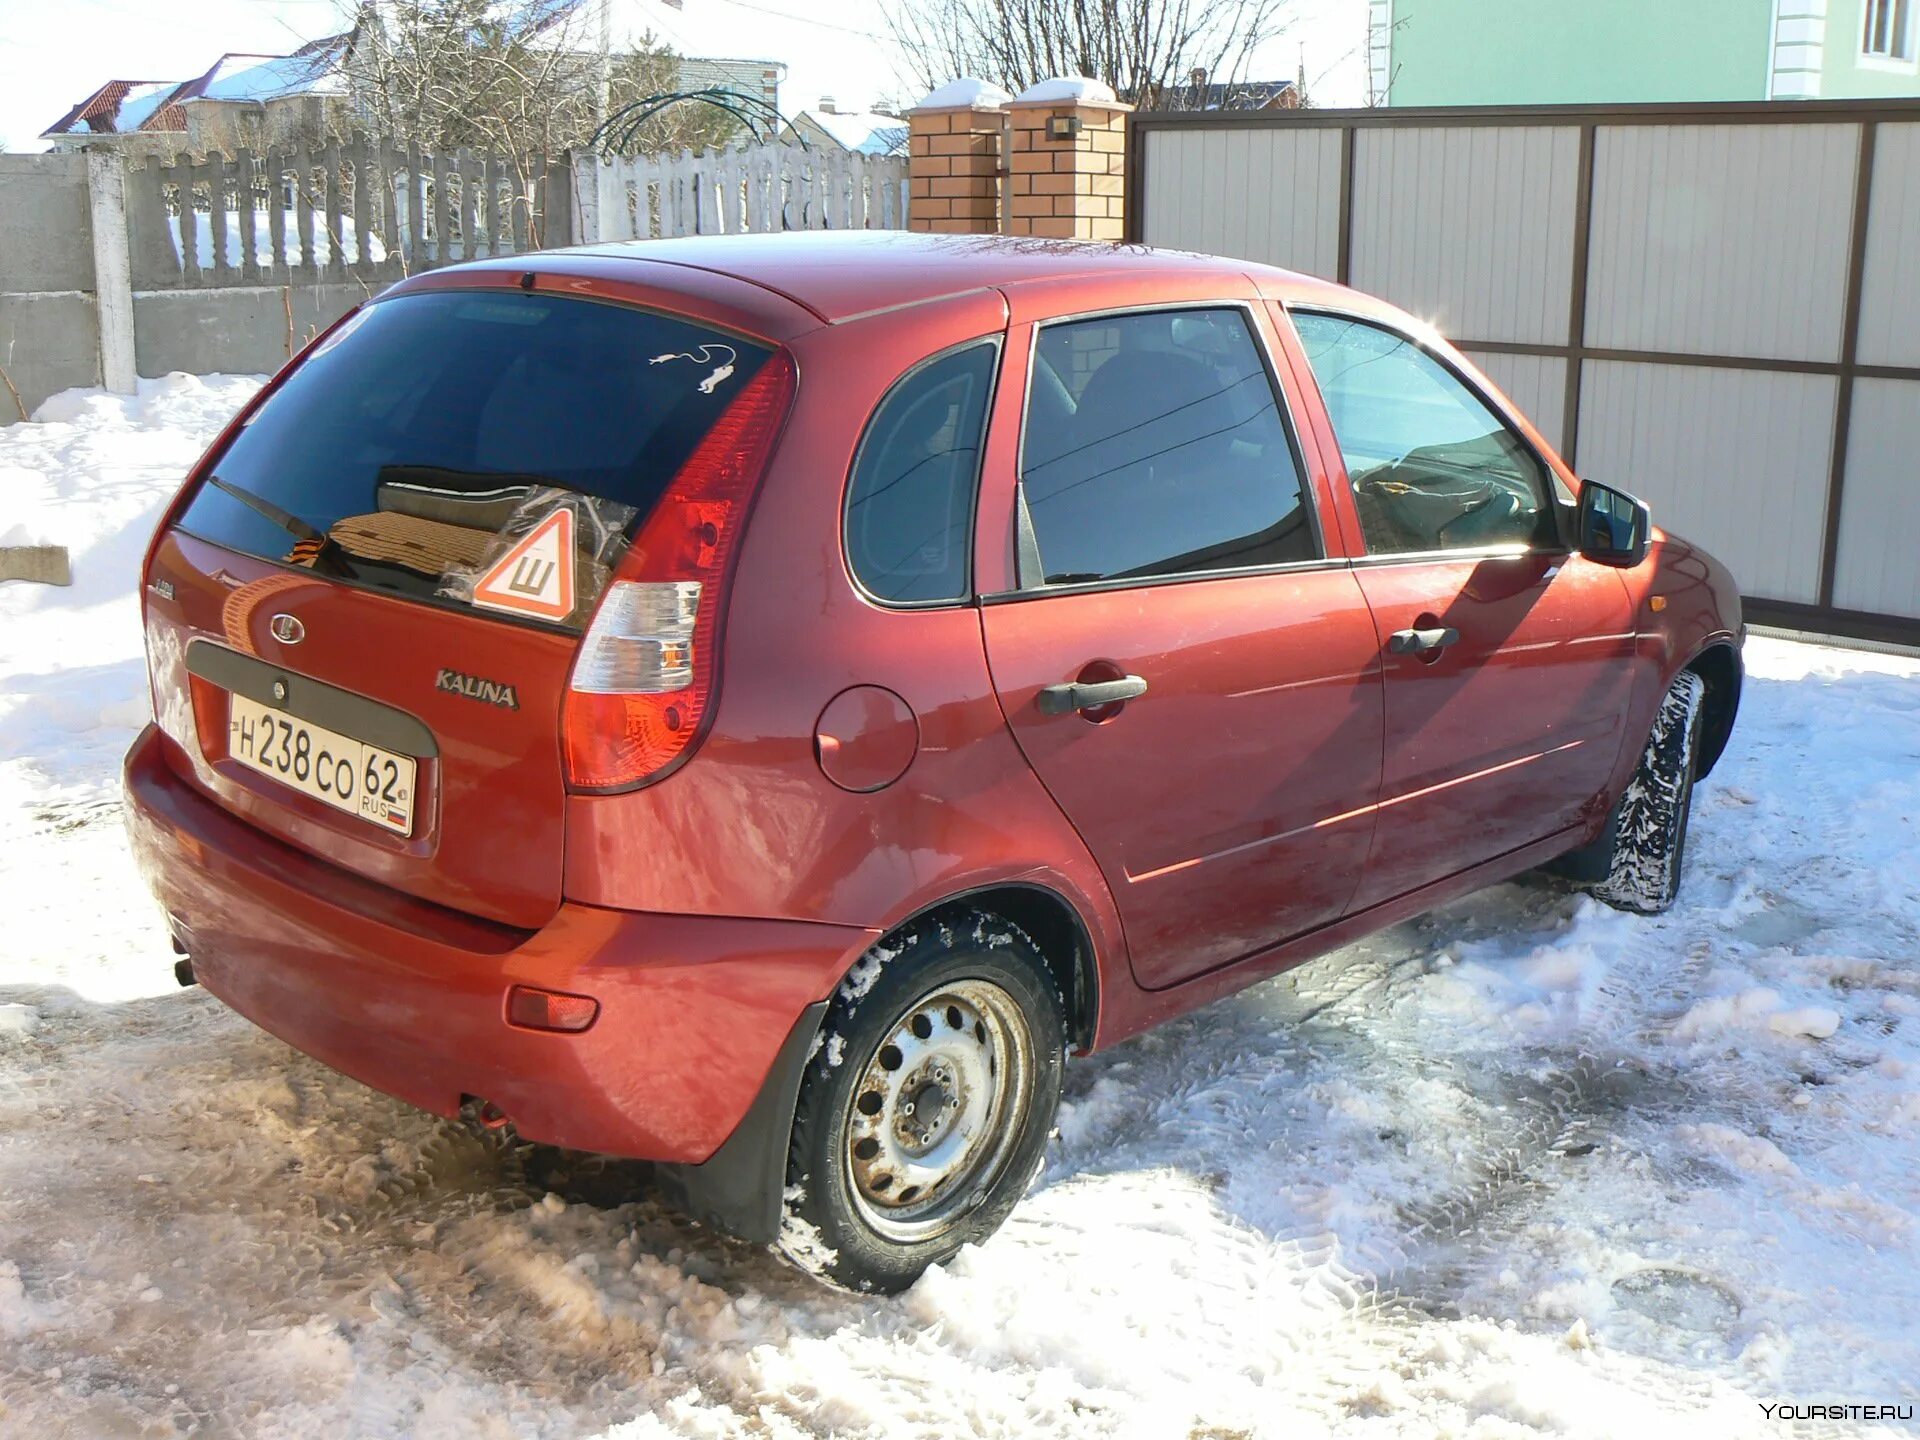 Новосибирск калина купить. Калина машина h023yy72. Машина Калина красная хэтчбек 323.